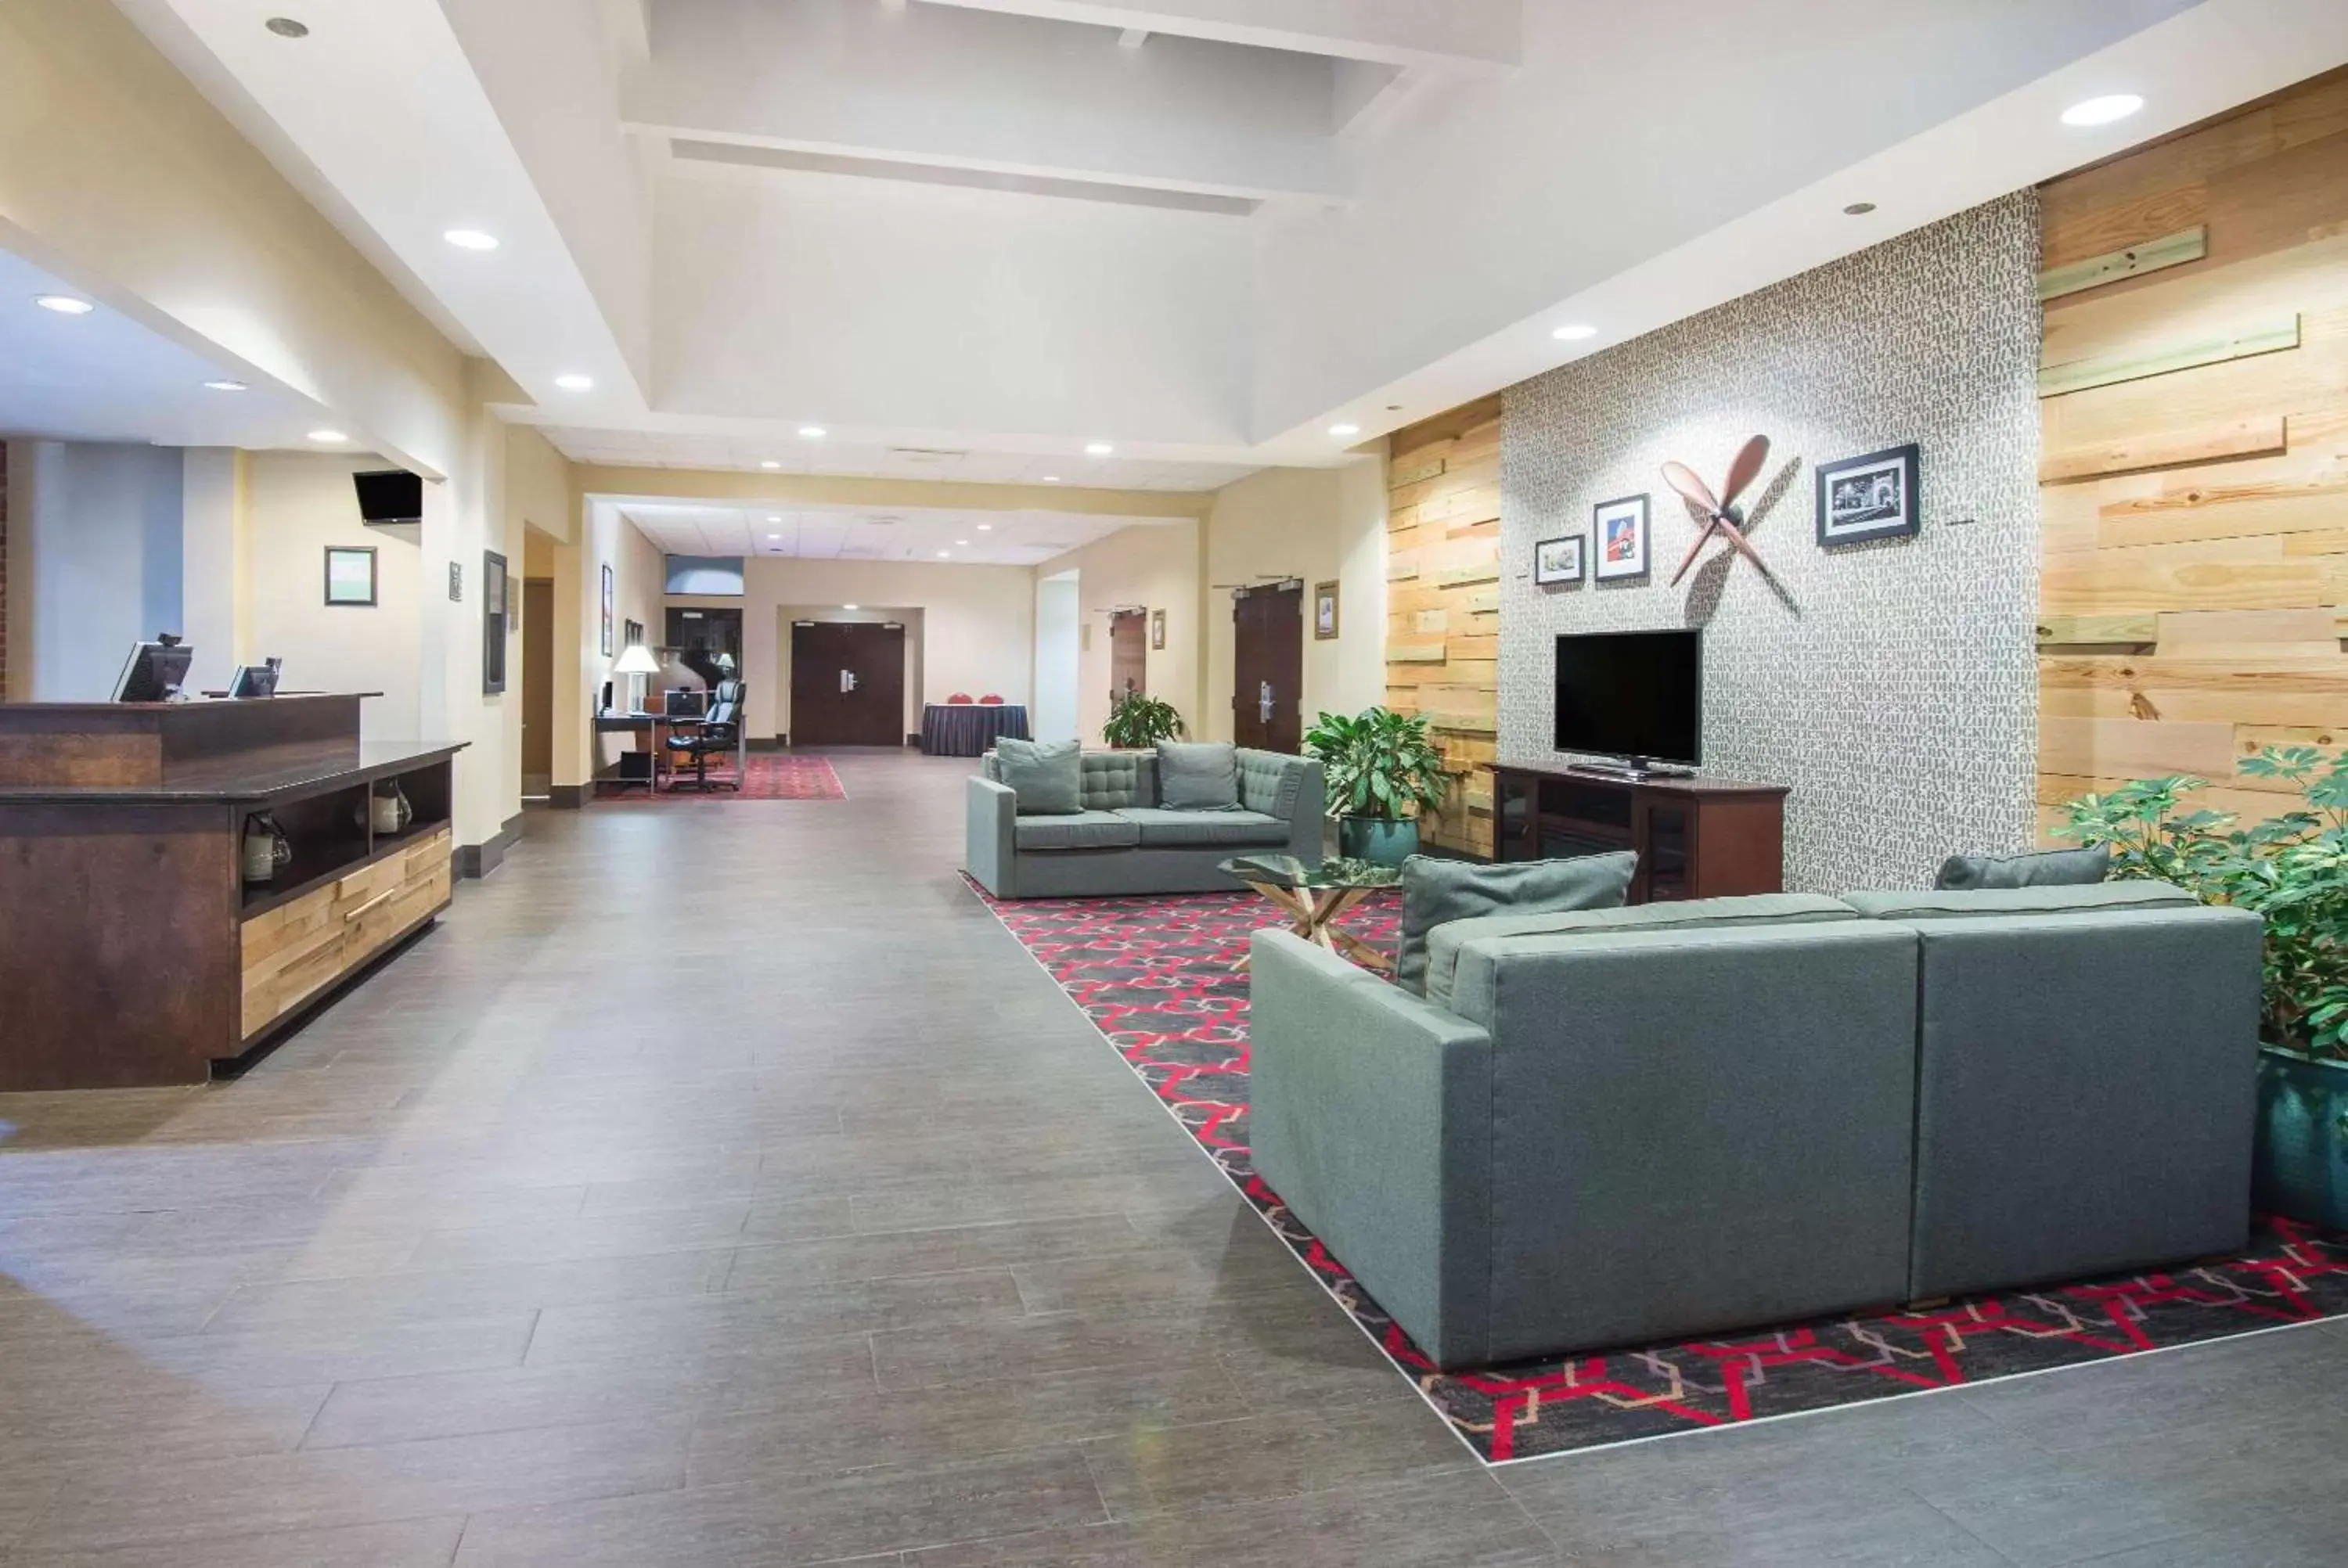 Lobby or reception, Lobby/Reception in Wyndham Garden Inn Pittsburgh Airport